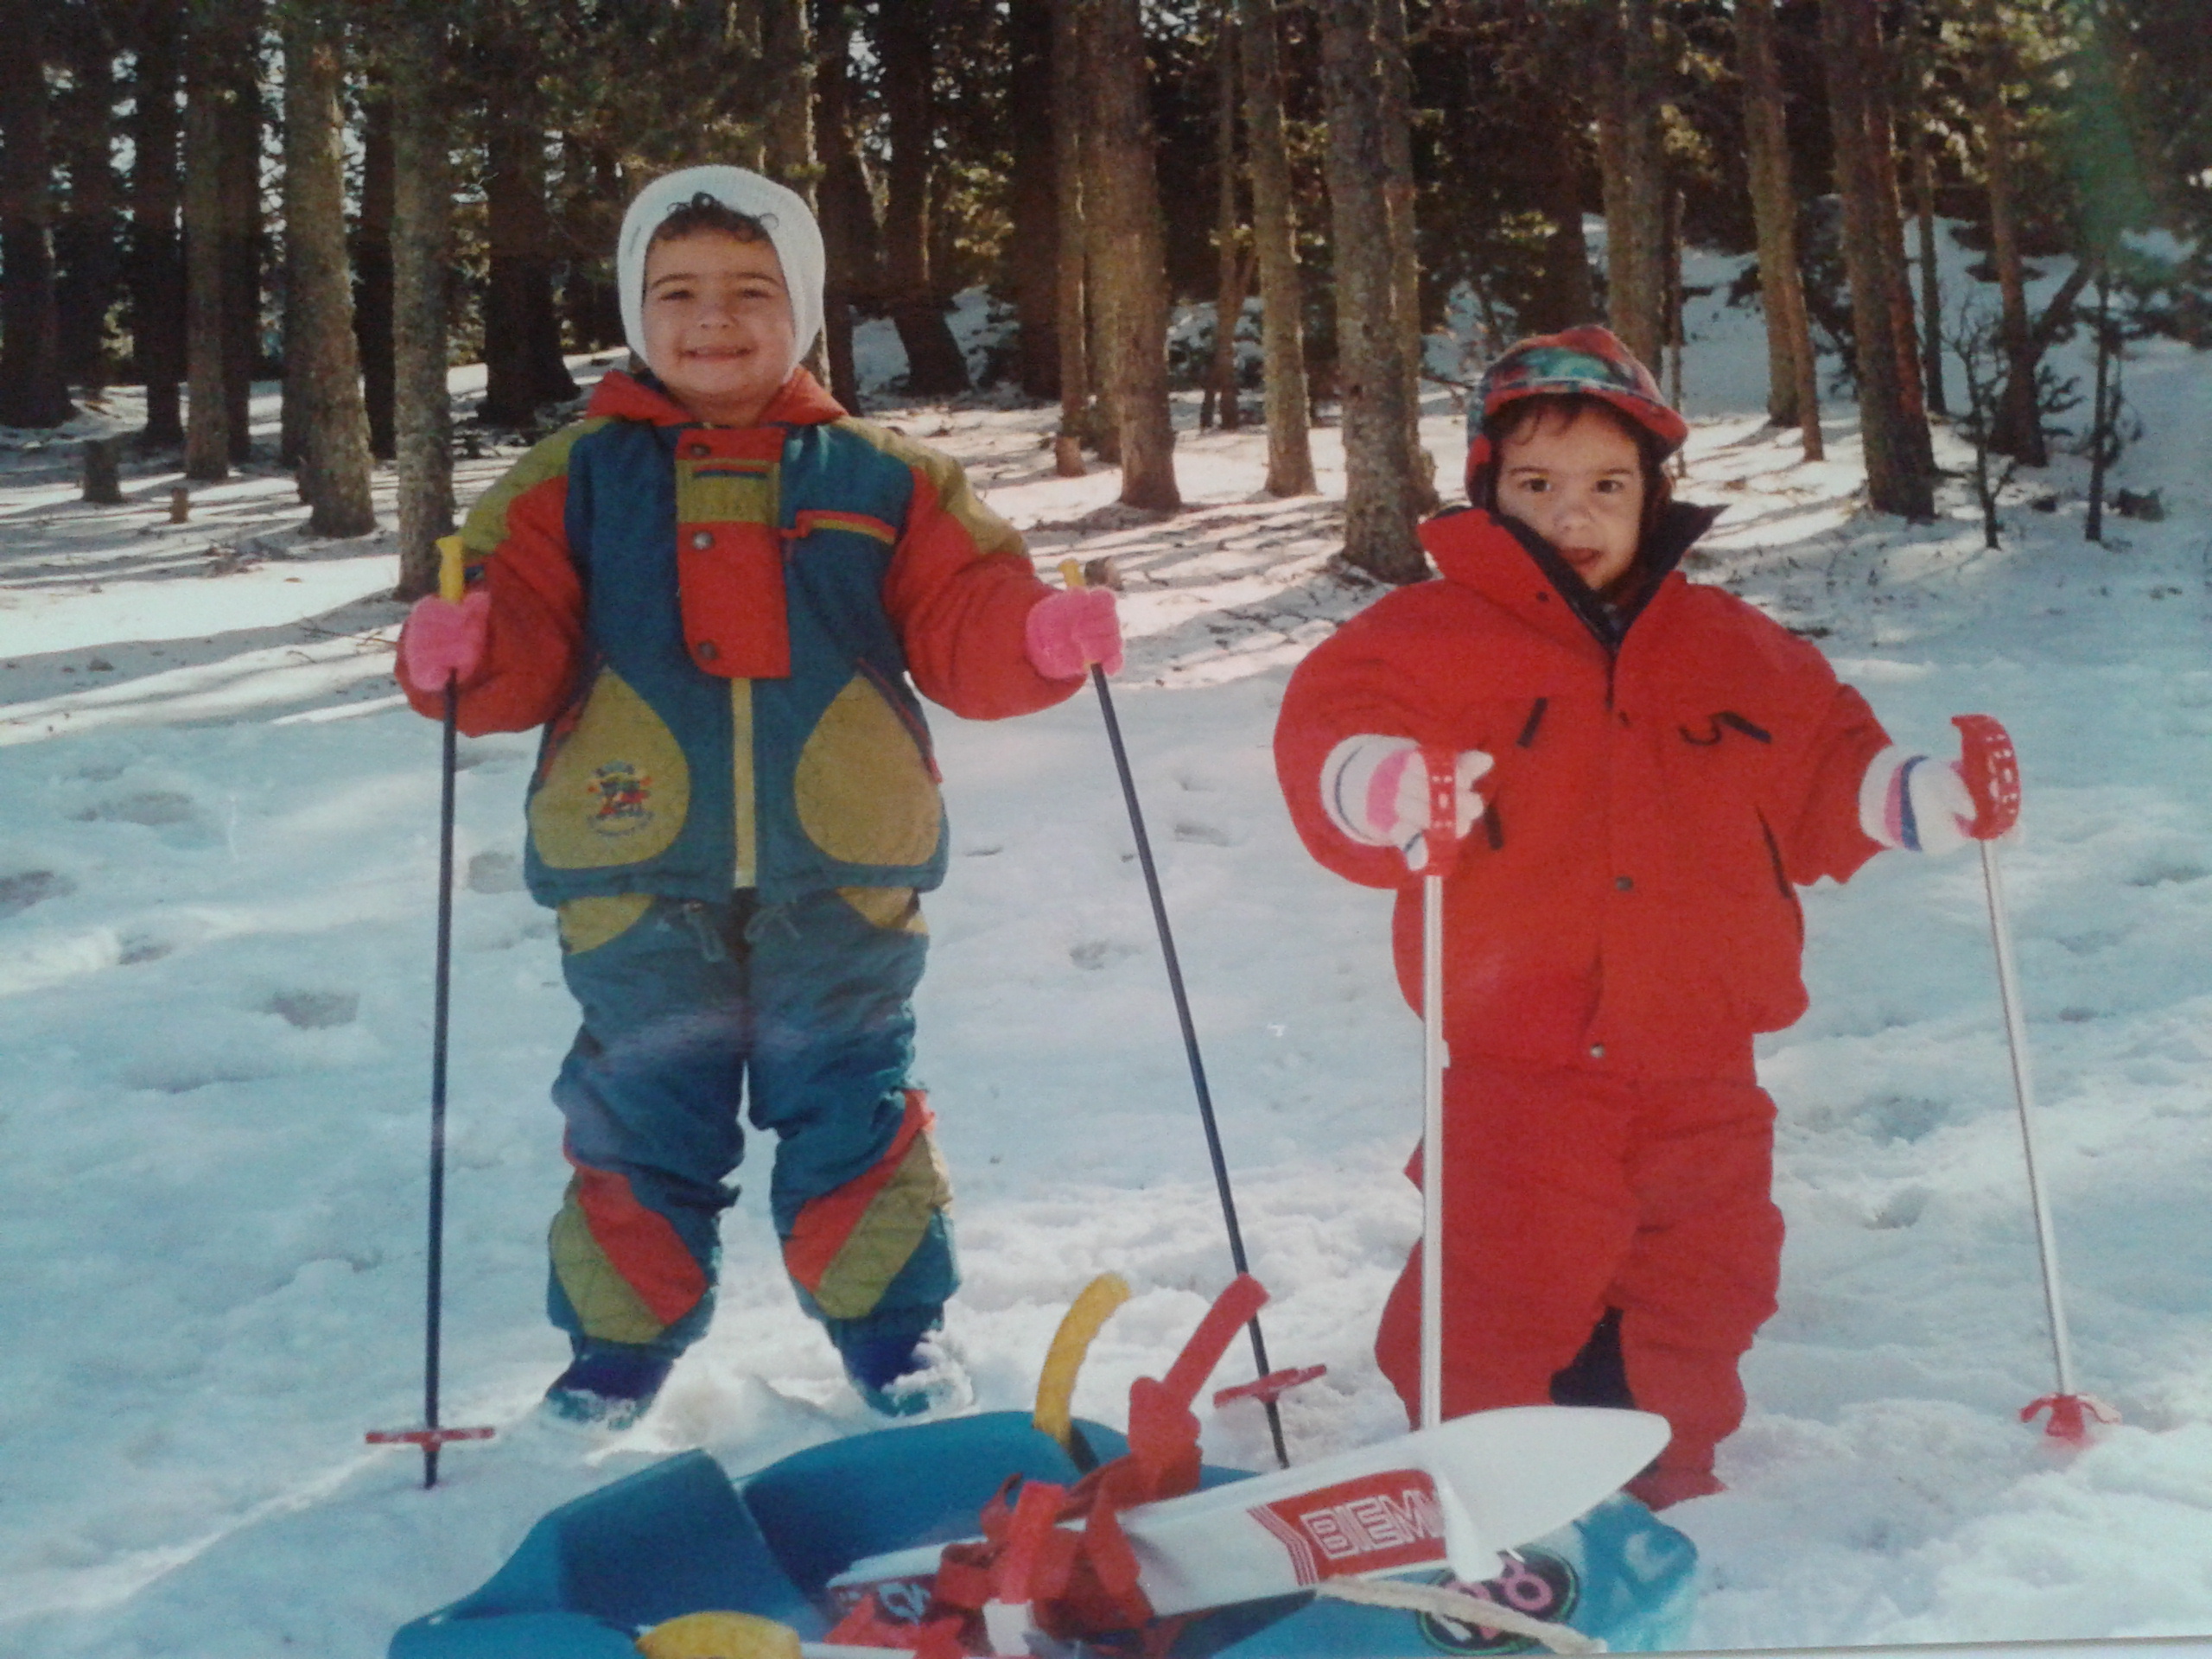 7 consejos fundamentales para esquiar con niños